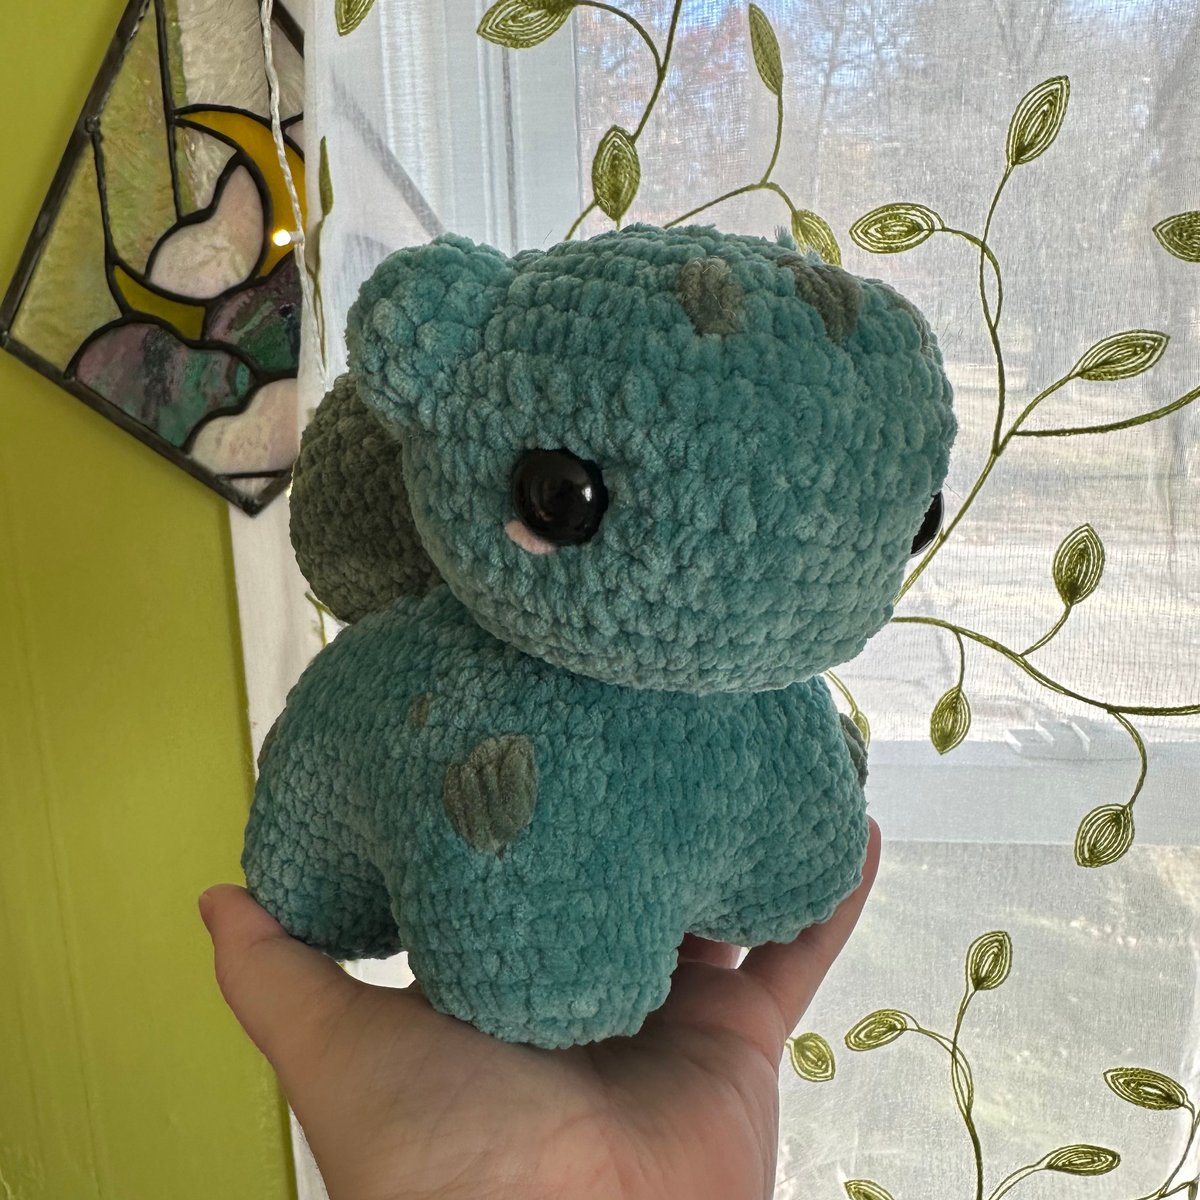 Crochet a Bulbasaur